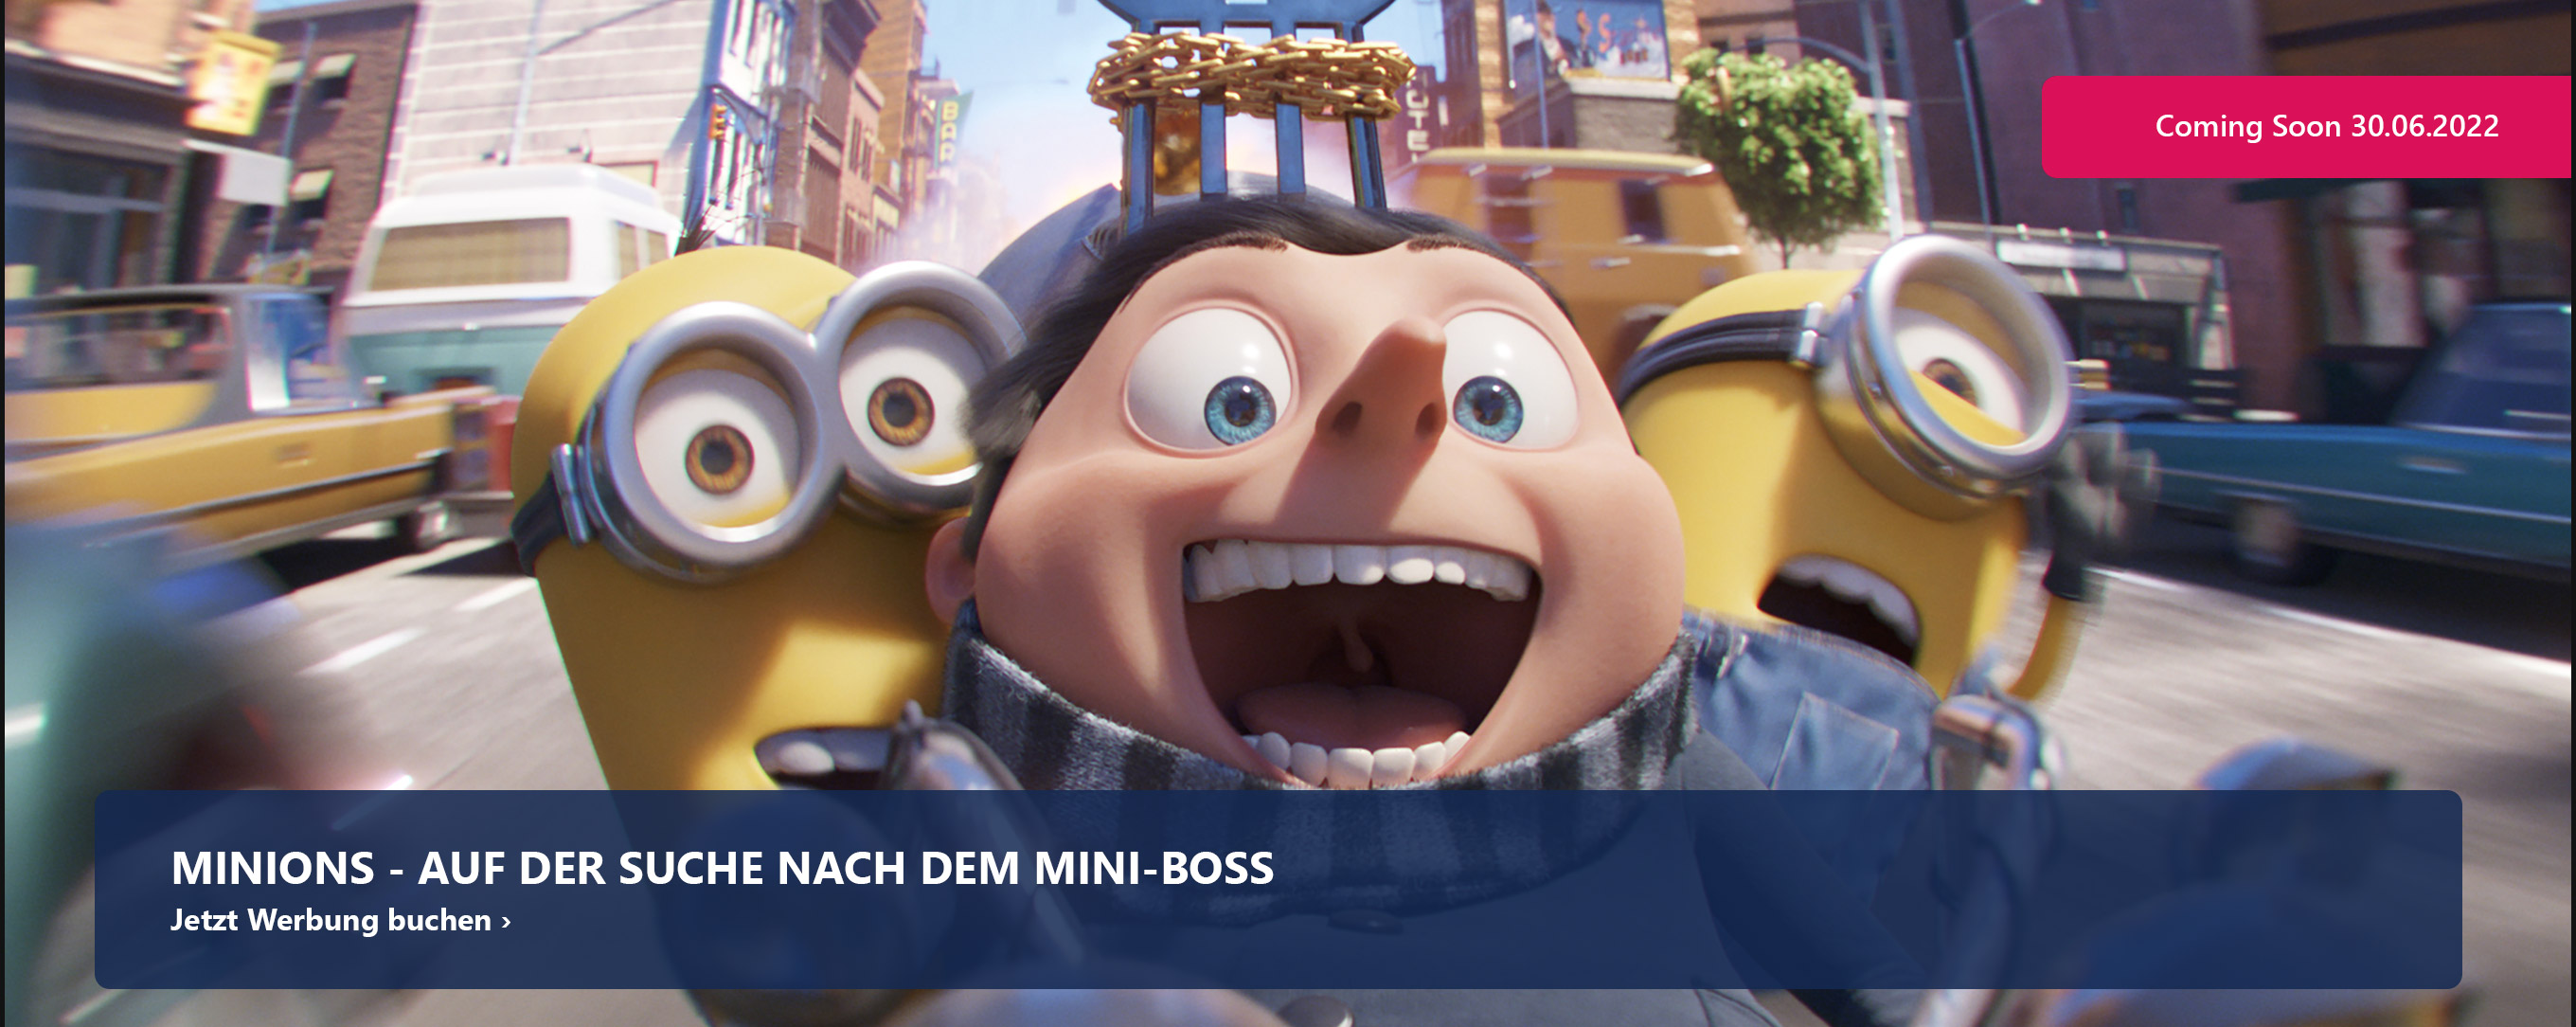 Minions - Auf der Suche nach dem Mini-Boss ab 30. Juni 2022 nur im Kino